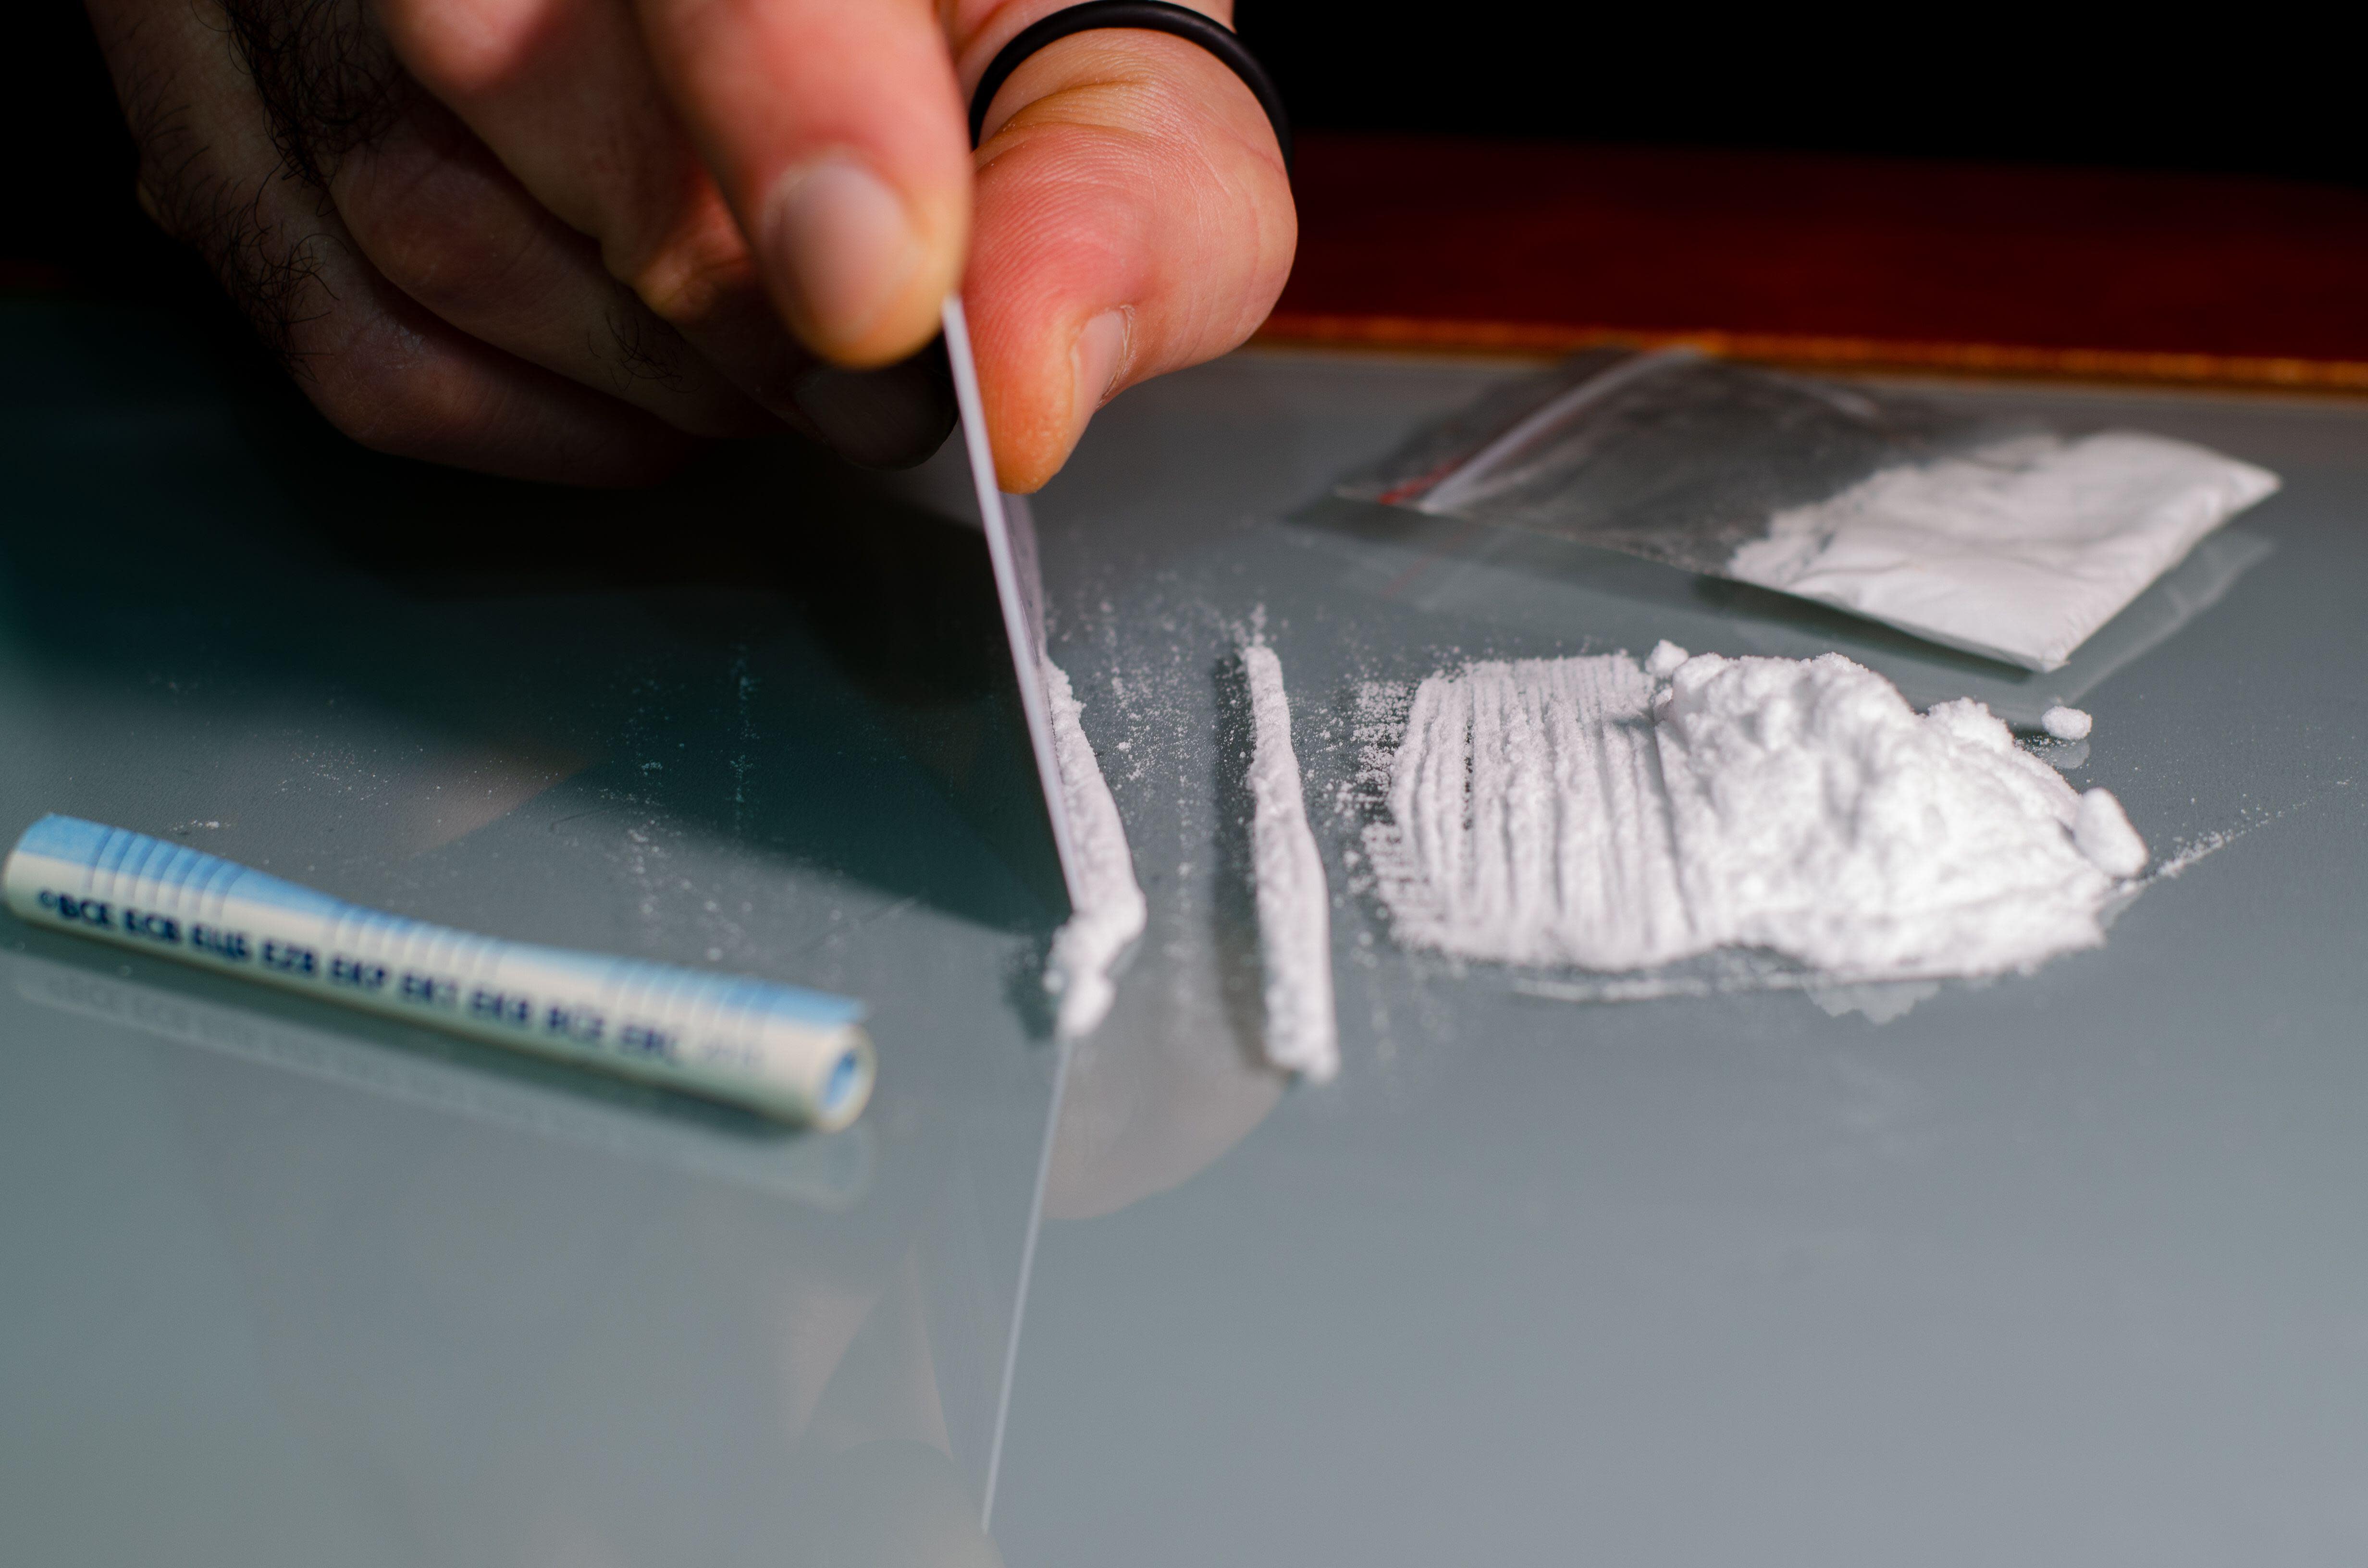 Las pruebas de aguas residuales muestran que la mayor parte del consumo de cocaína en Finlandia se encuentra en la región de la capital